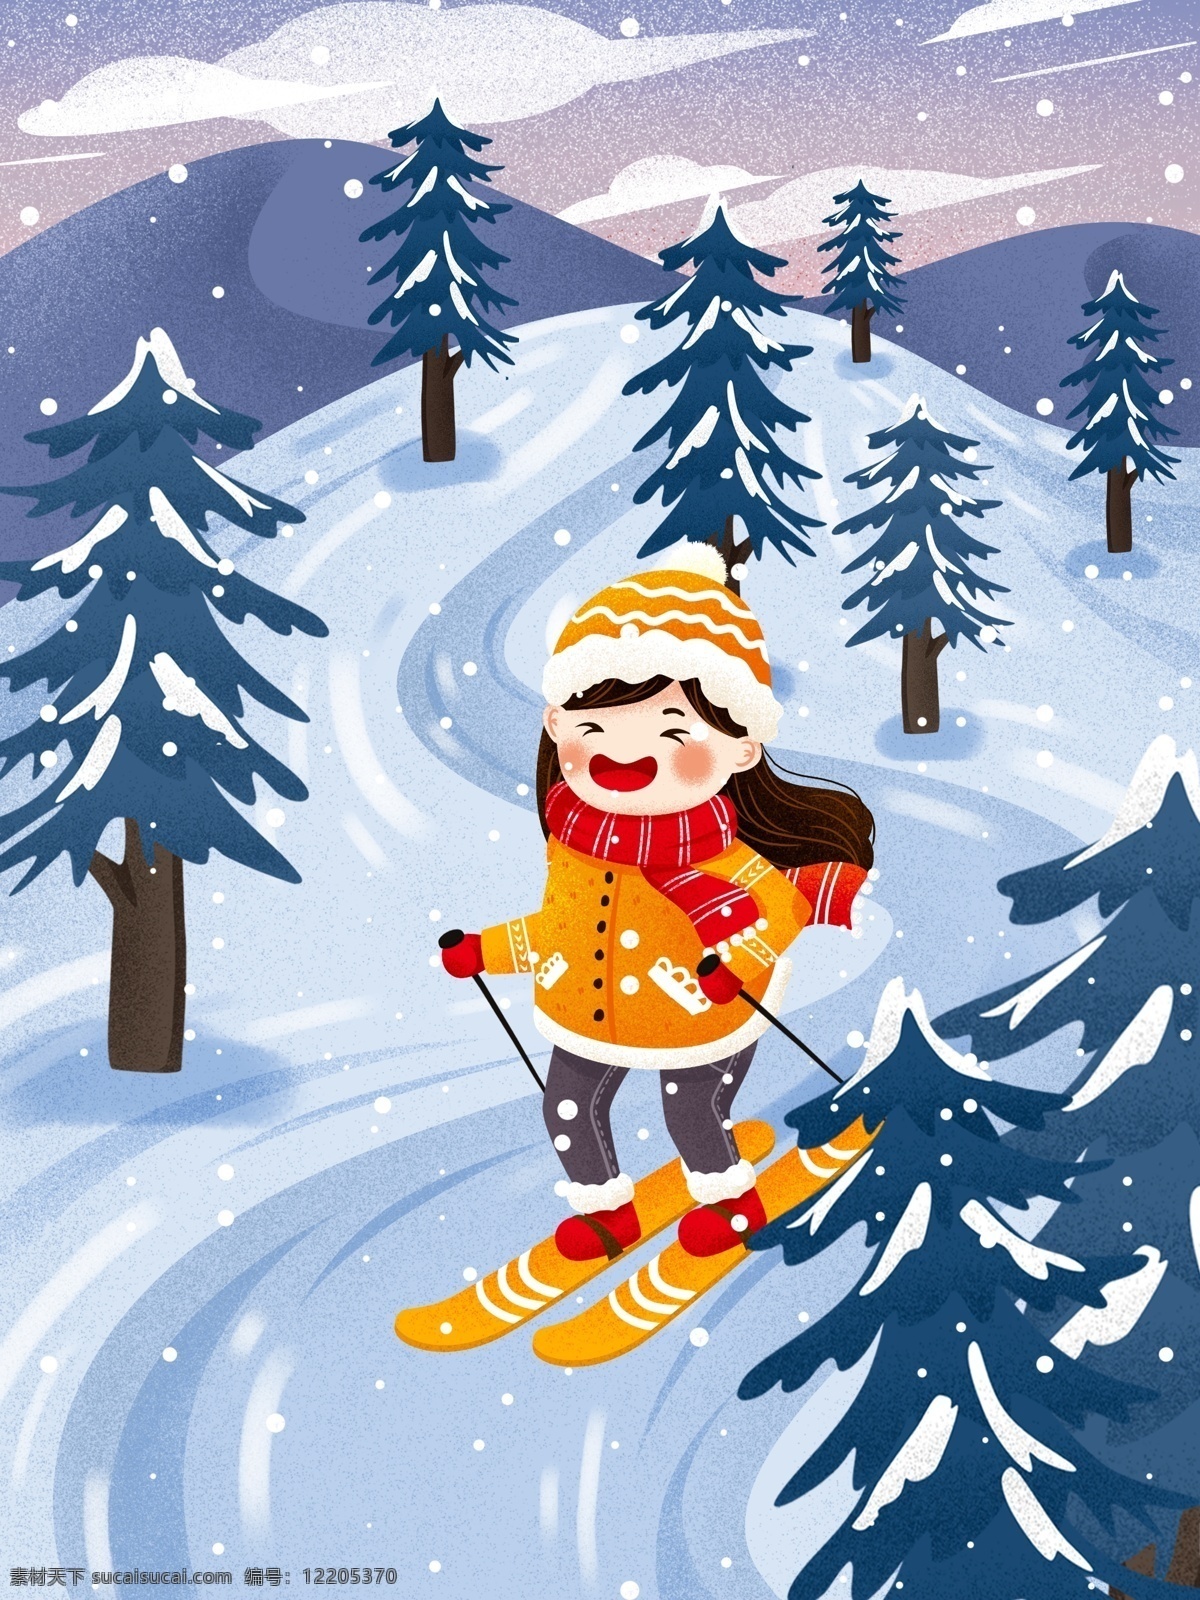 冬季 滑雪 女孩 雪 中 冬天 雪景 插画 唯美 冬季插画 滑雪女孩 滑雪人物 滑雪插画 大雪 大雪插画 冬季雪景 下雪 白雪 节气大雪 手绘人物 人物插画 冷色 寒冷 手绘